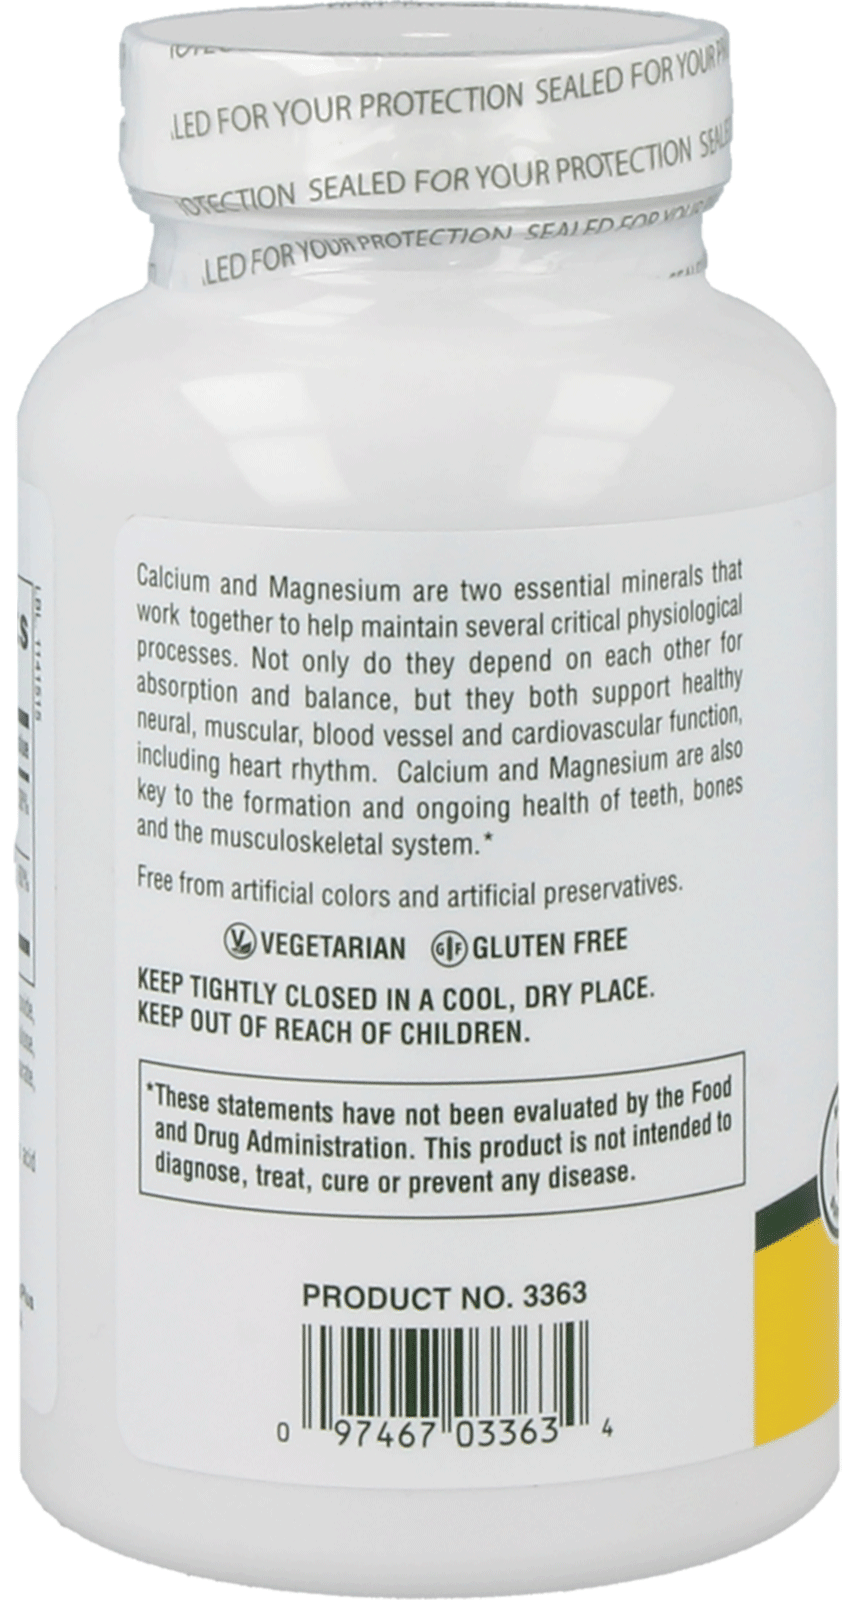 Cal/Mag 500/250 mg 